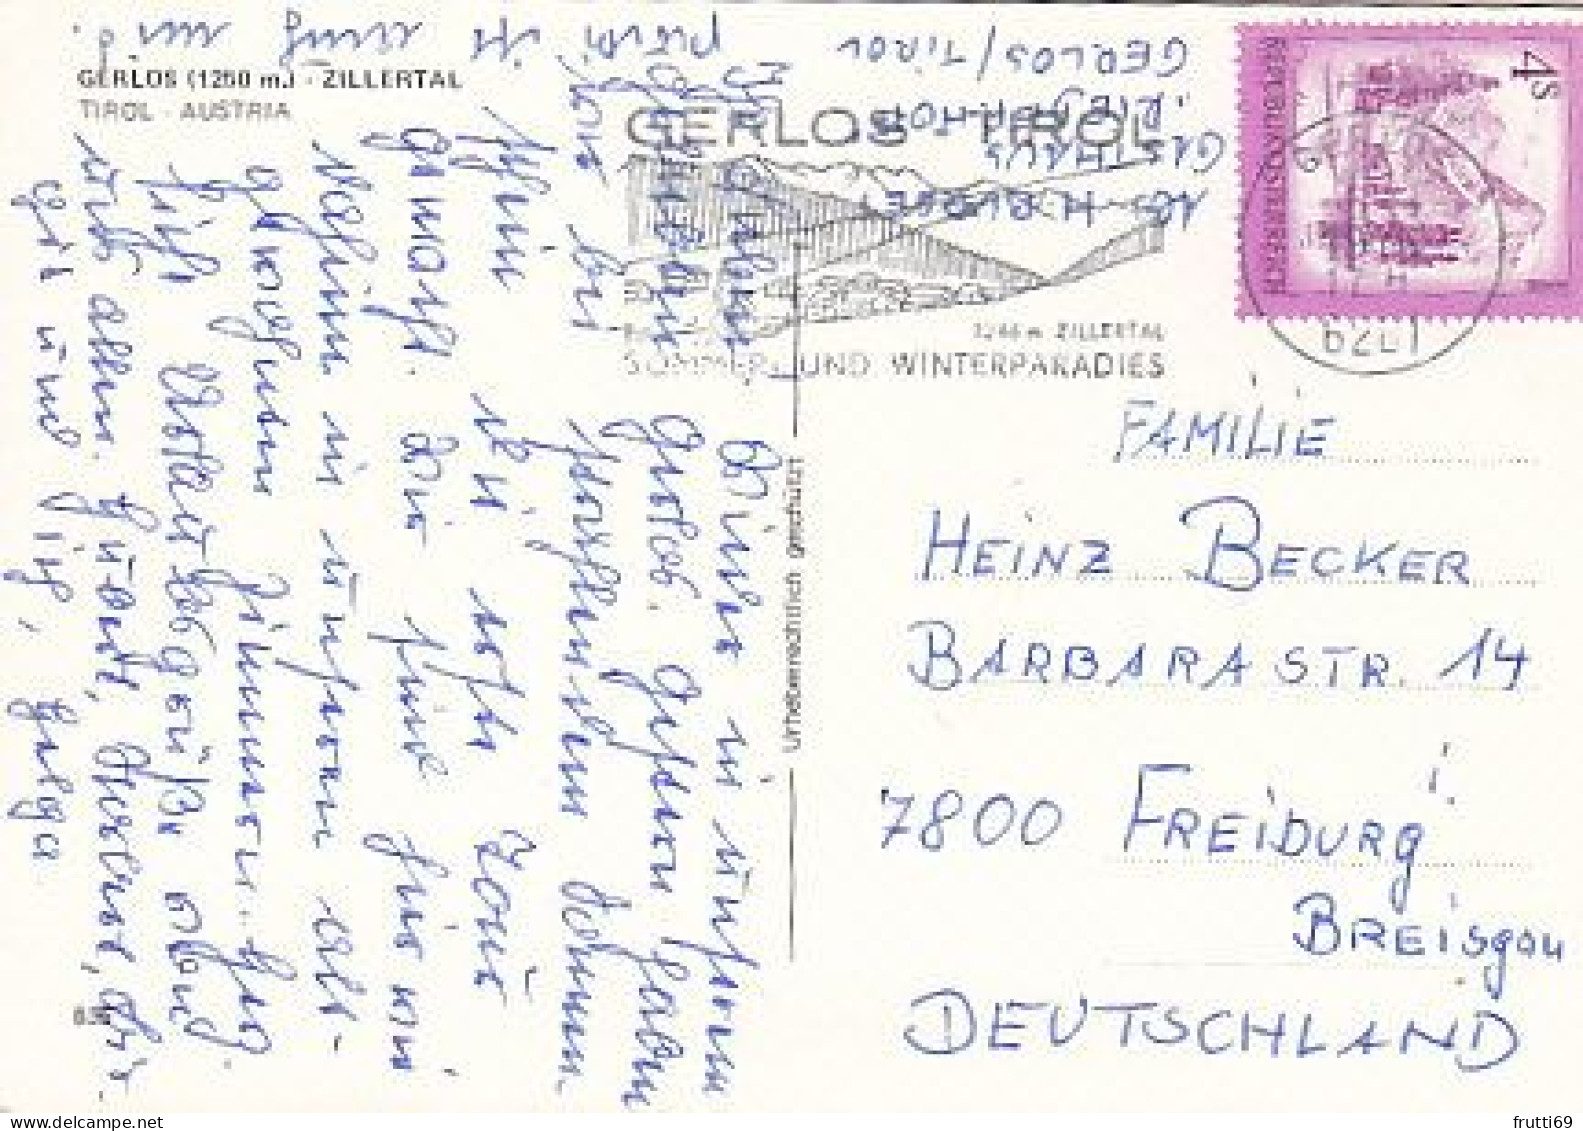 AK 174978 AUSTRIA - Hochtal Gerlos - Gerlos